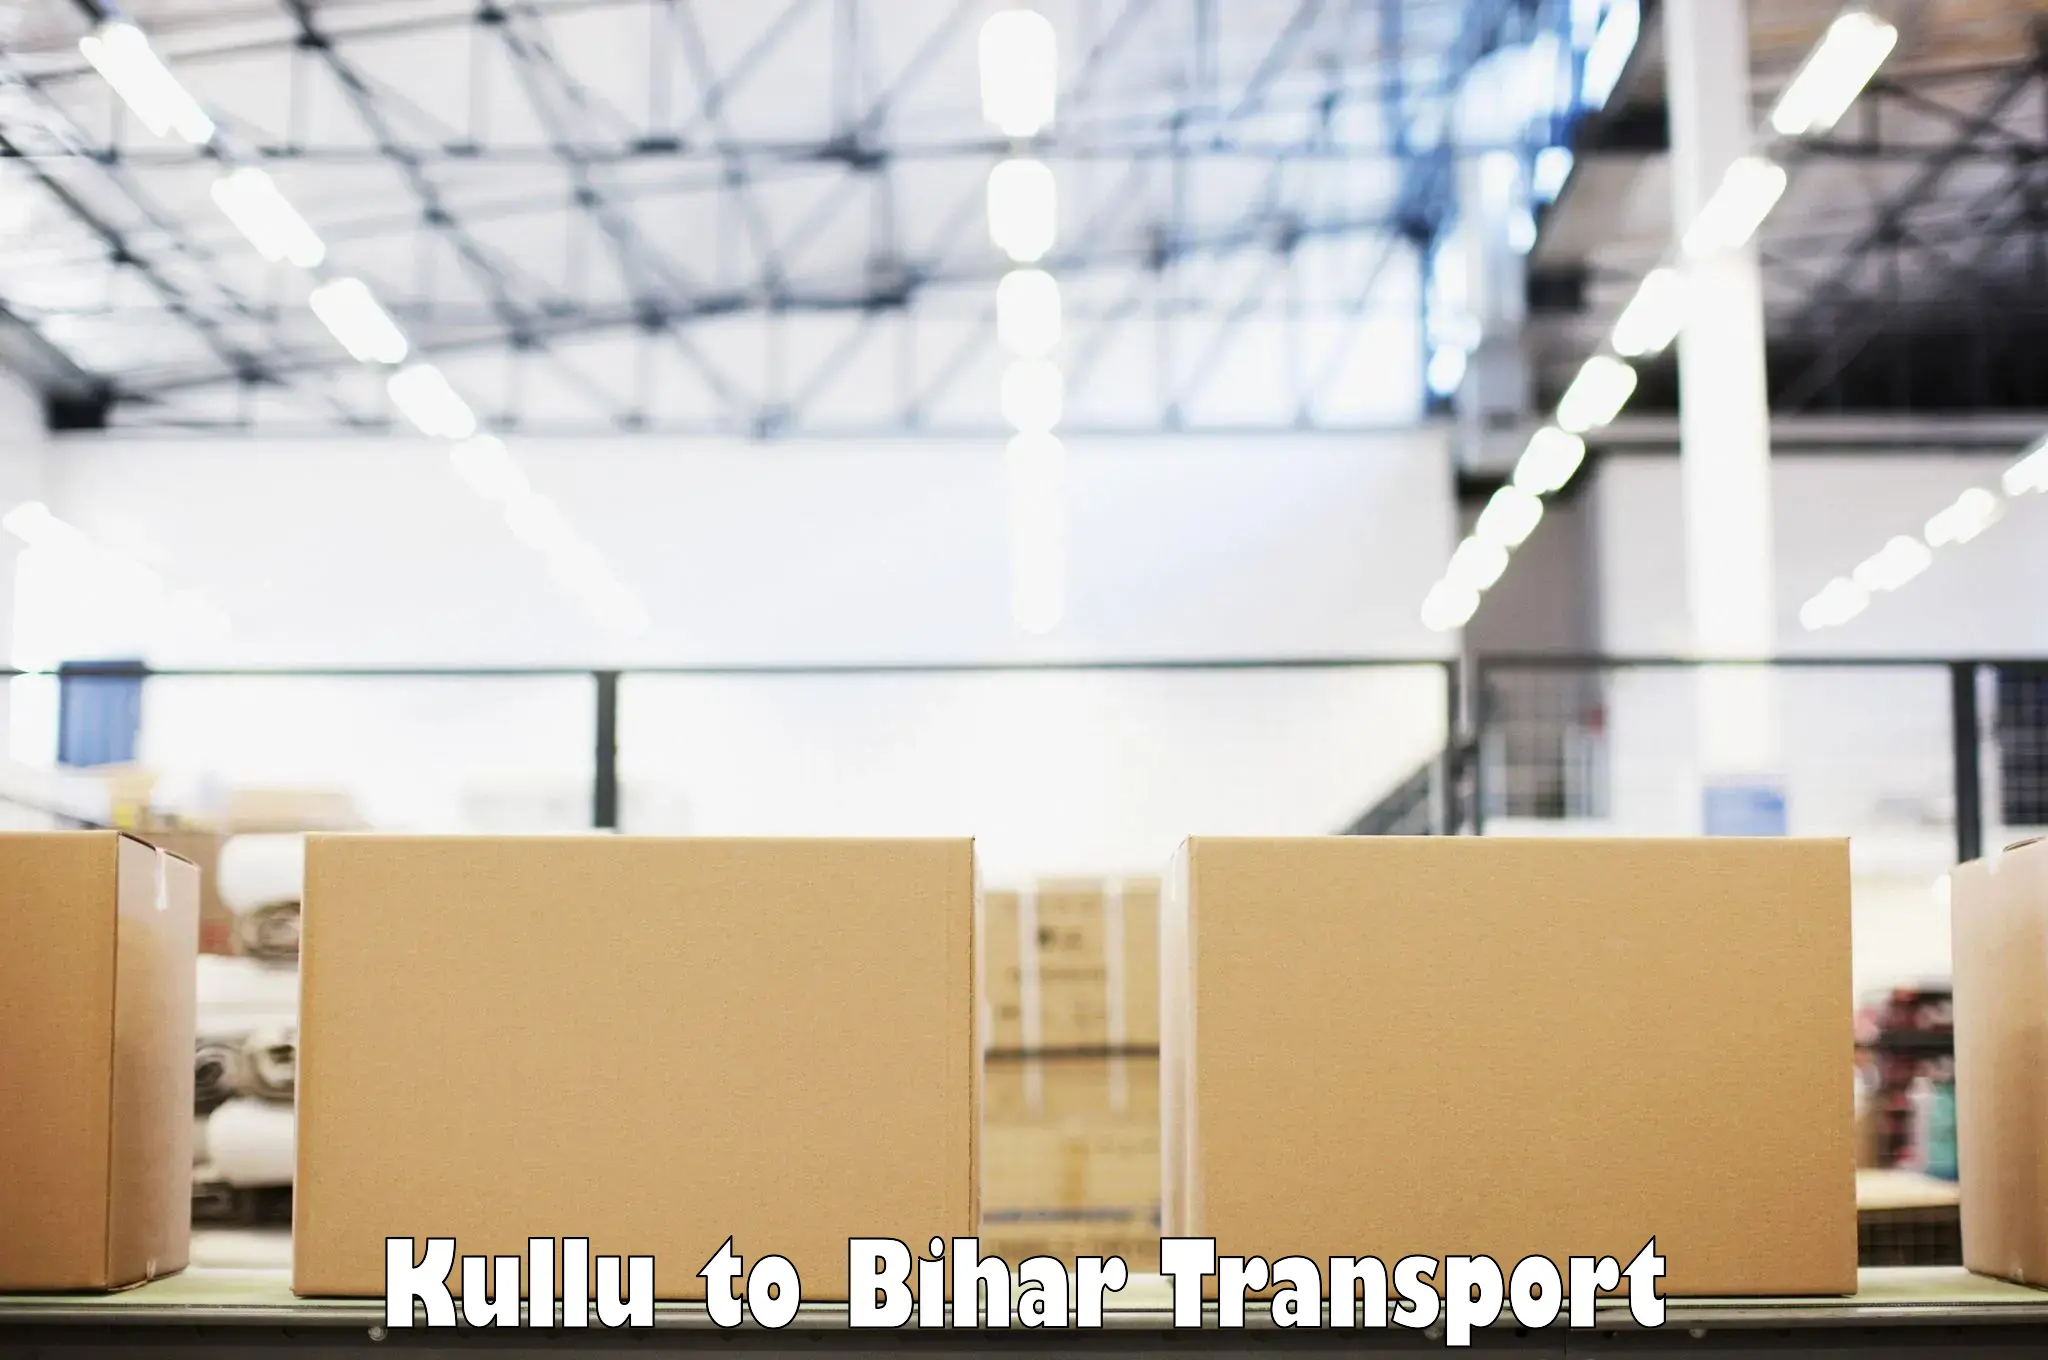 Vehicle parcel service Kullu to Baniapur